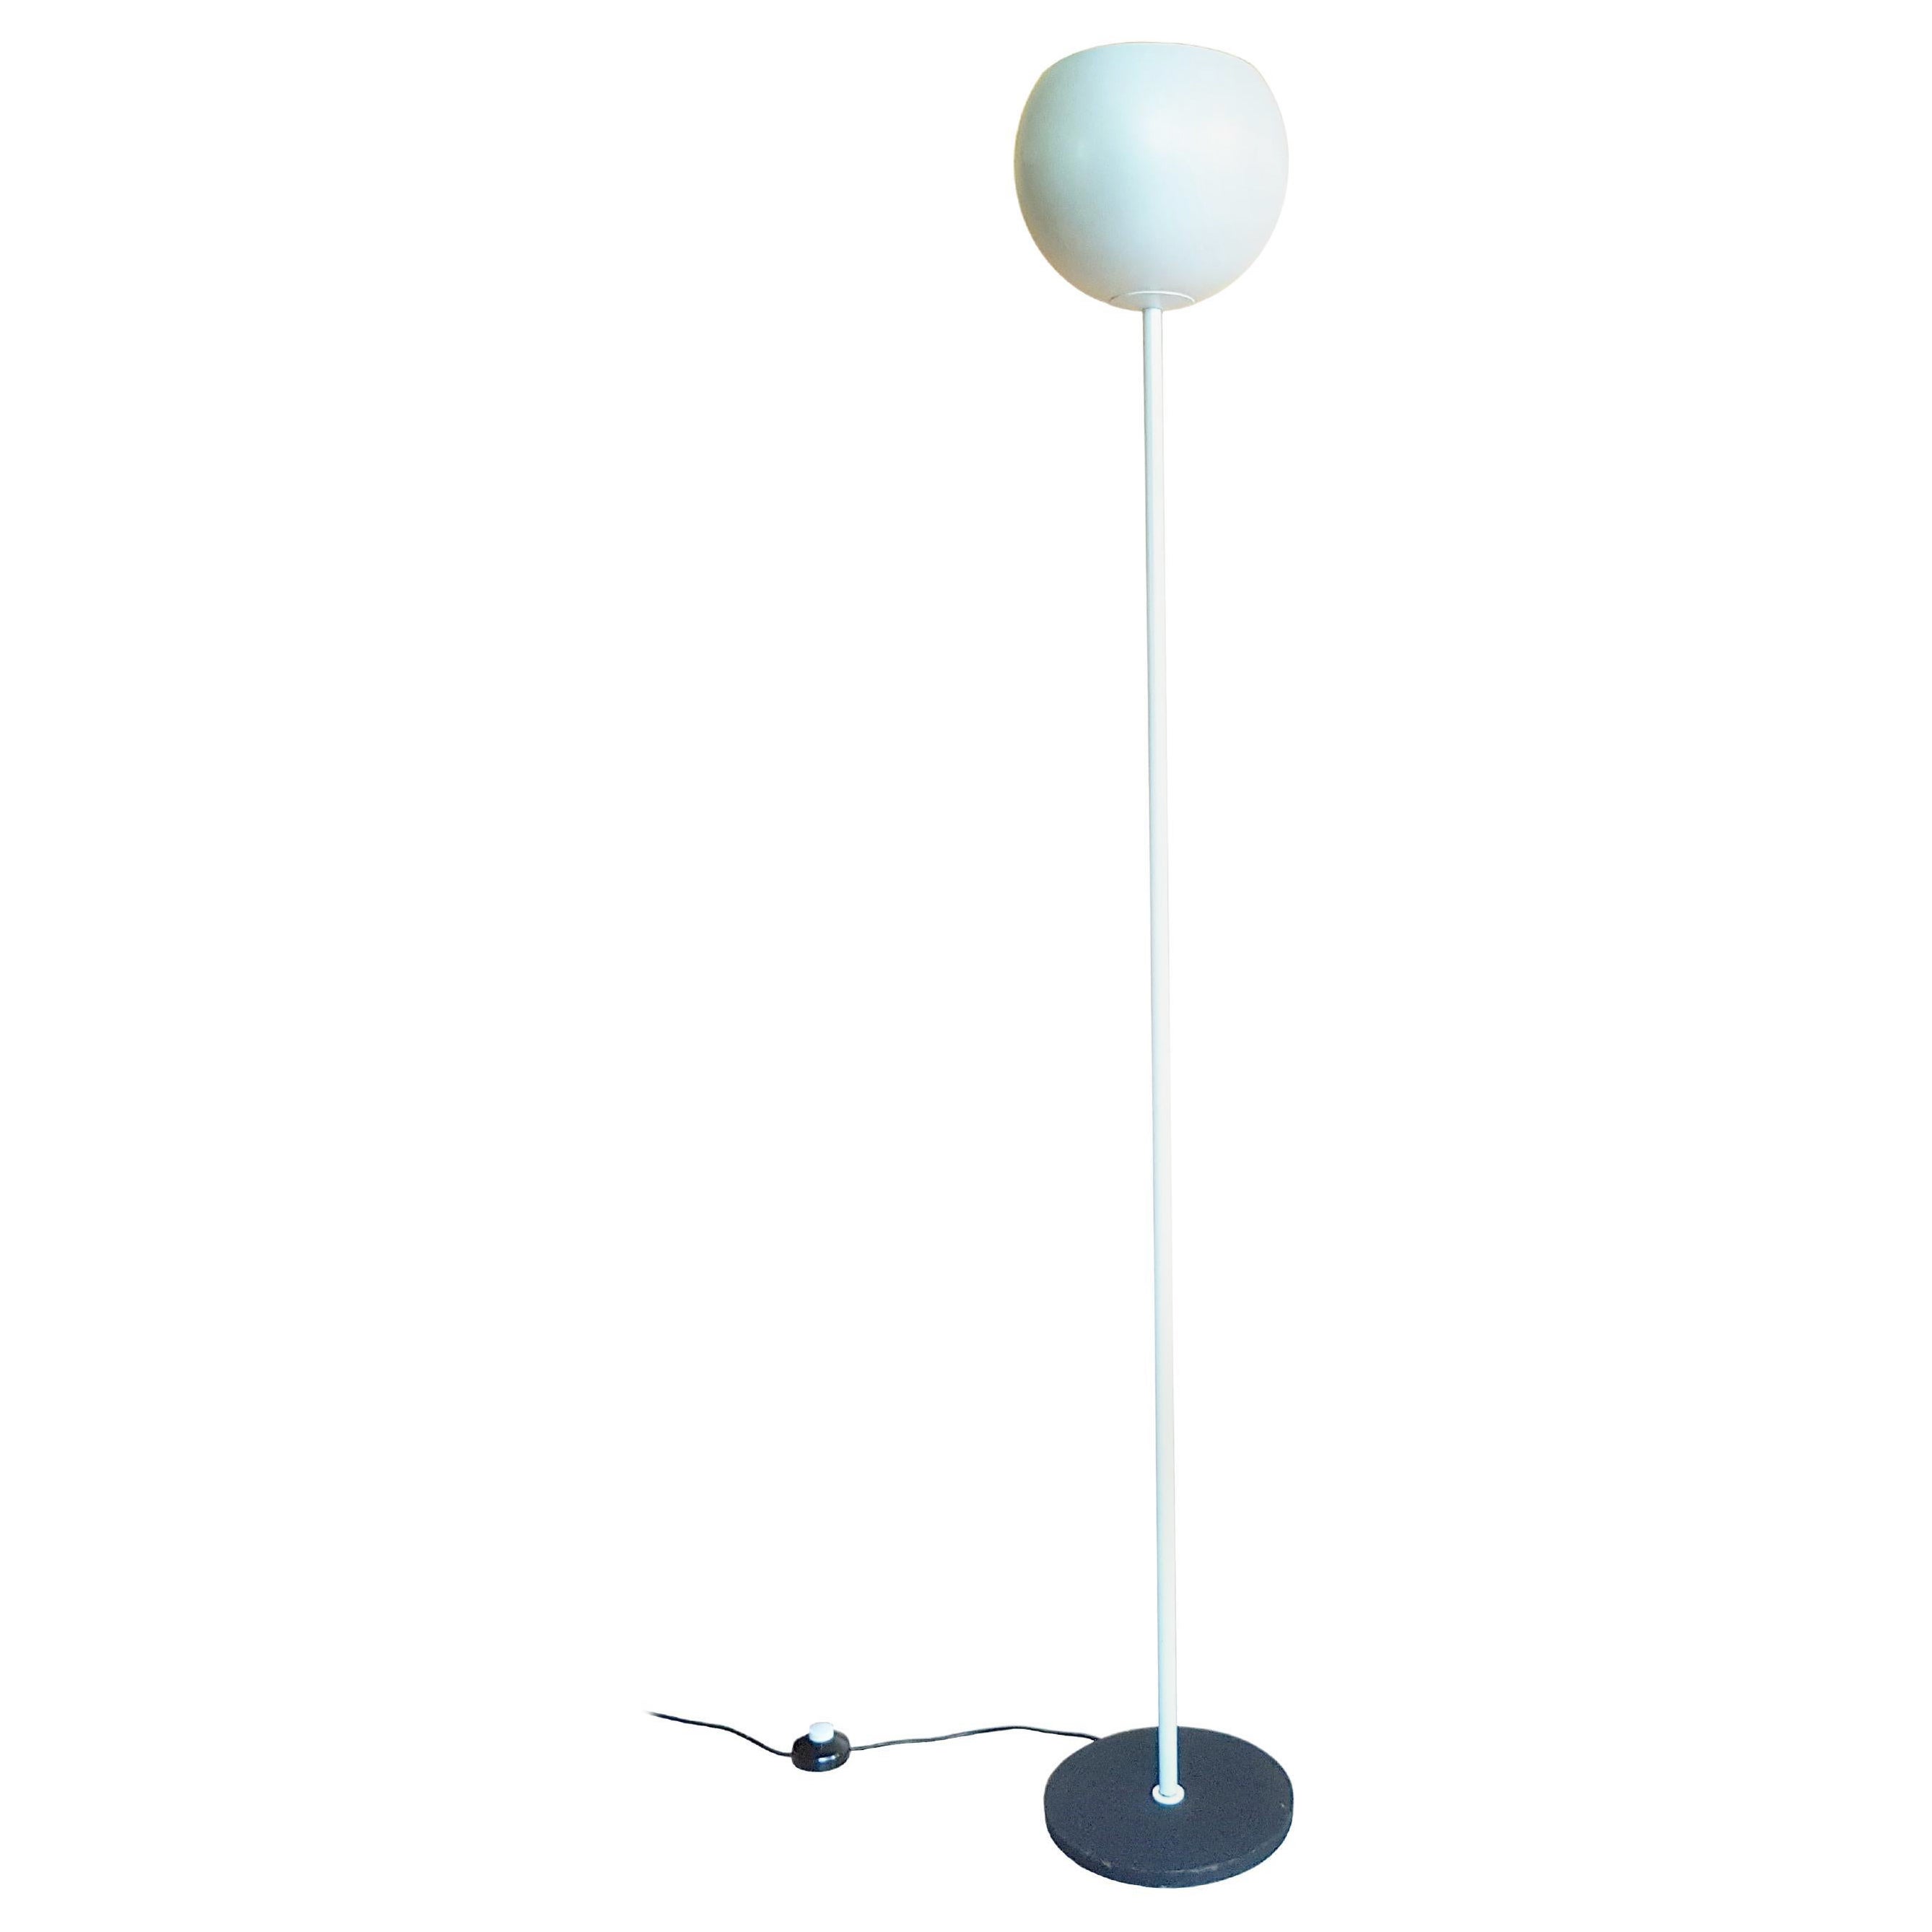 Pearl white & black metal 1960s floor lamp luminator by Stilnovo For Sale